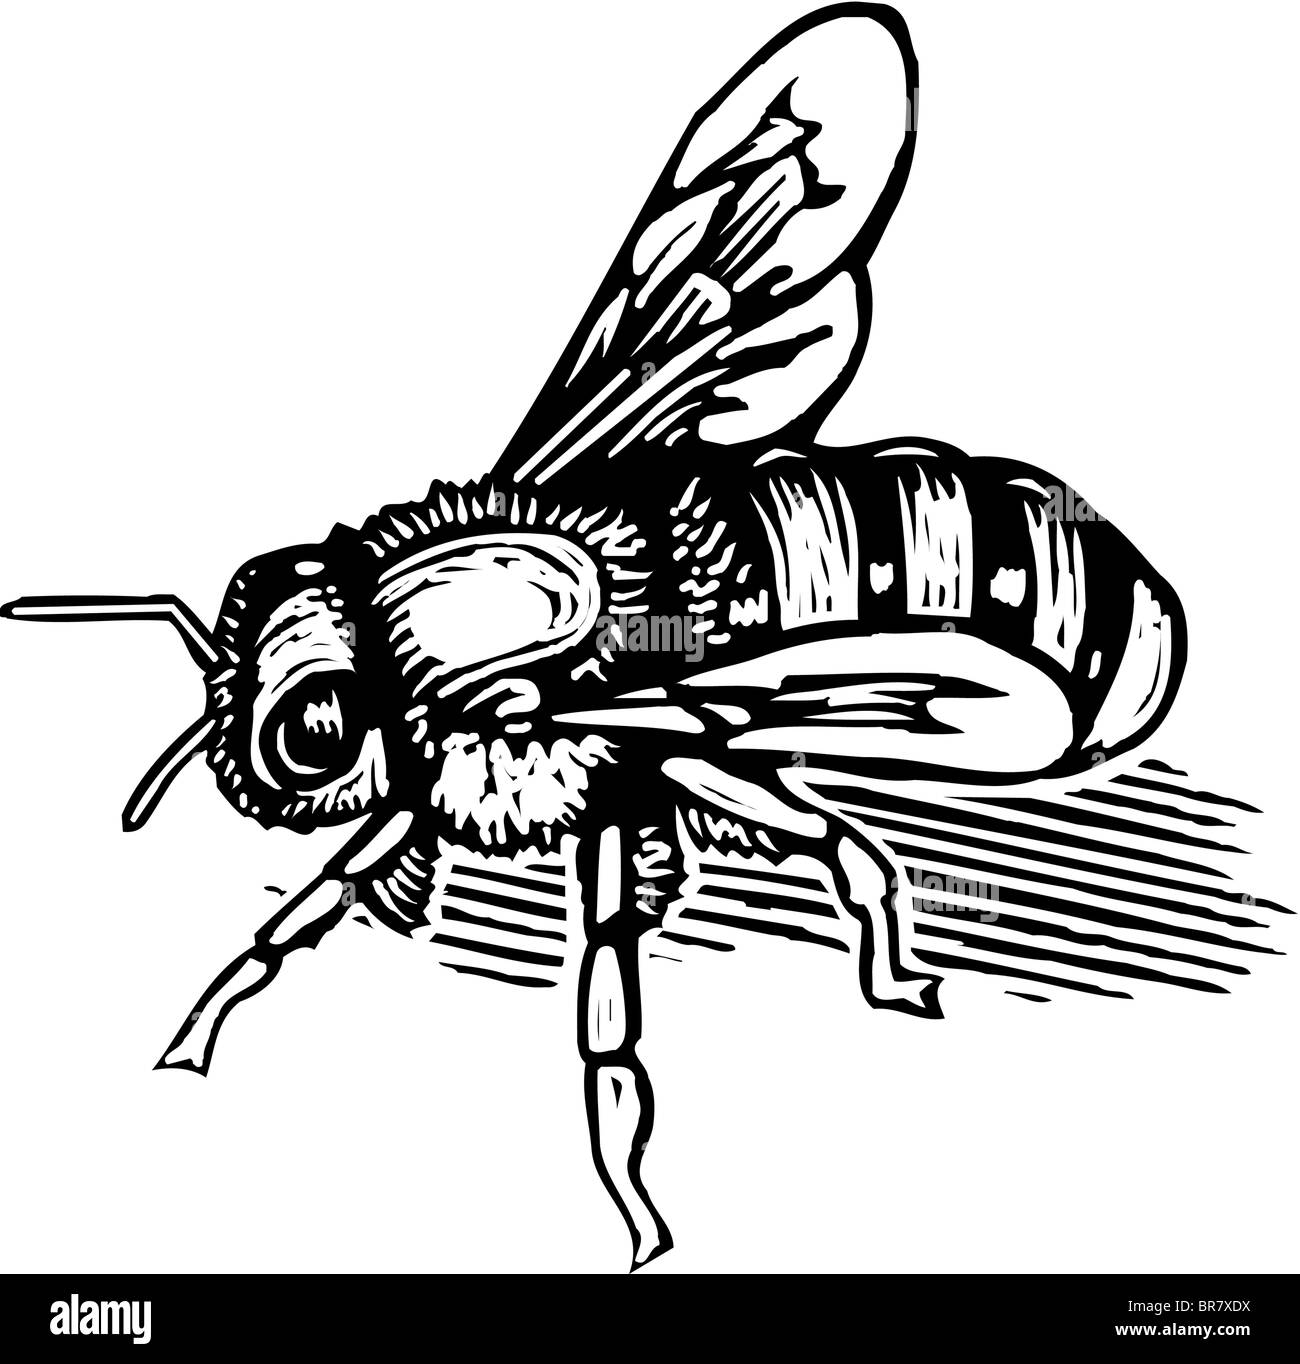 Bandes dessinées d'une abeille illustrés en noir et blanc Banque D'Images